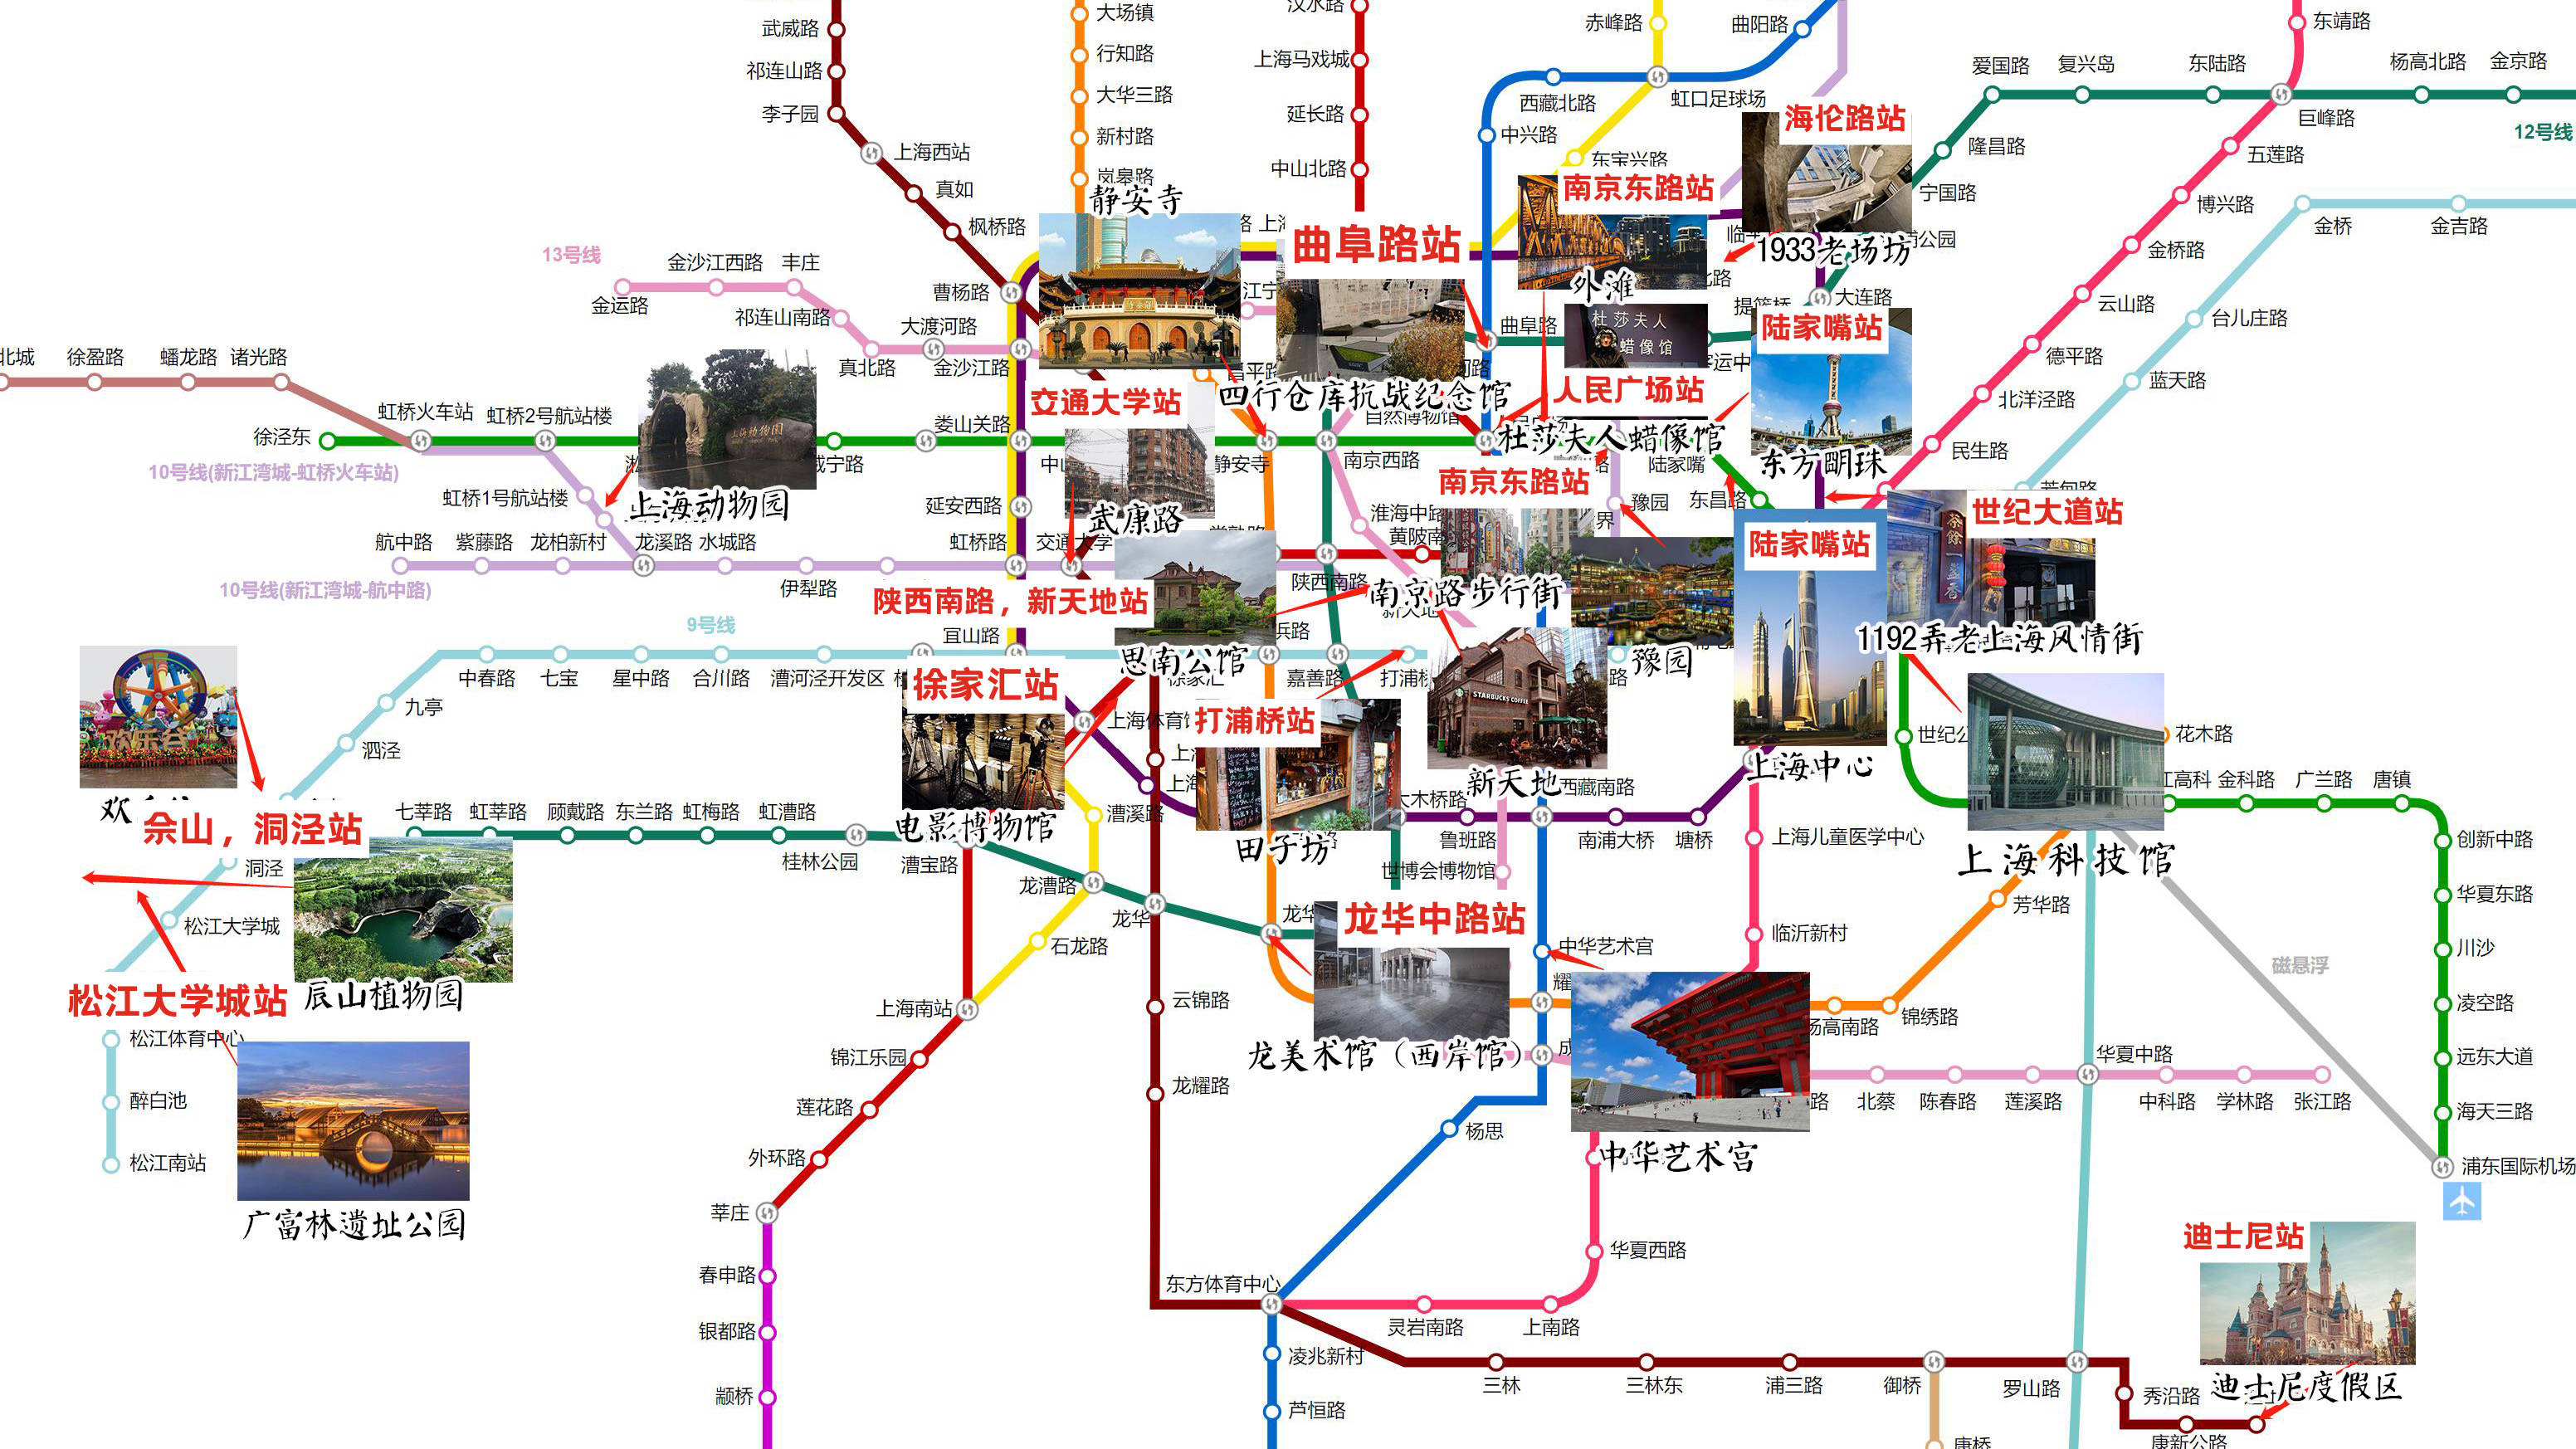 原创上海主要景点分布及行李寄存超全攻略(地址,营业时间等)